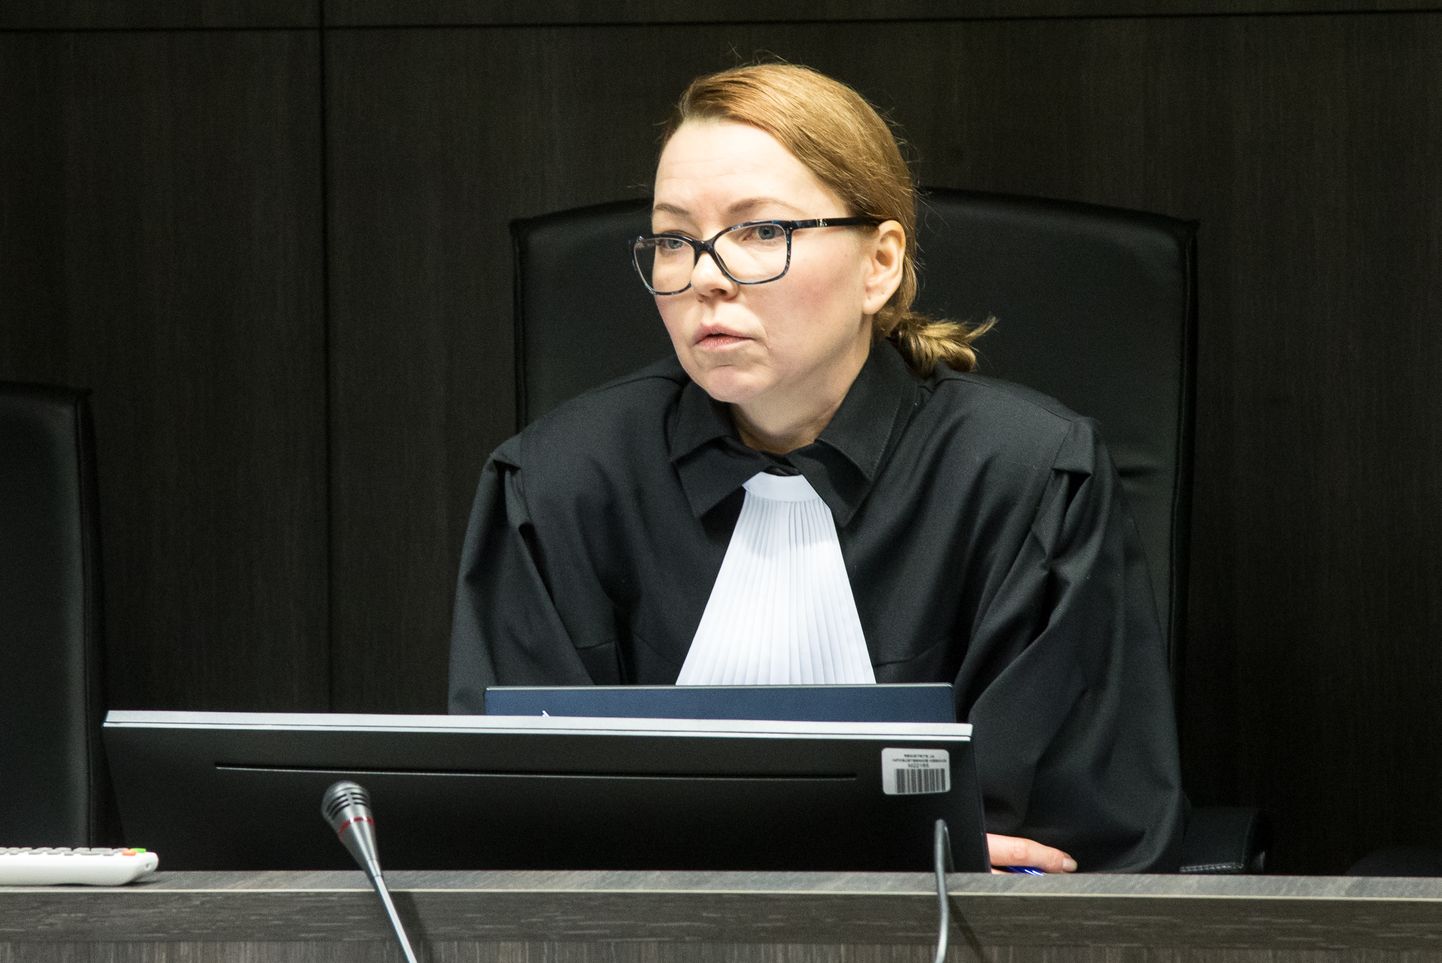 Астрид Аси проработала председателем Вируского уездного суда четыре года. Теперь она возглавит крупнейший уездный суд Эстонии - Харьюский.